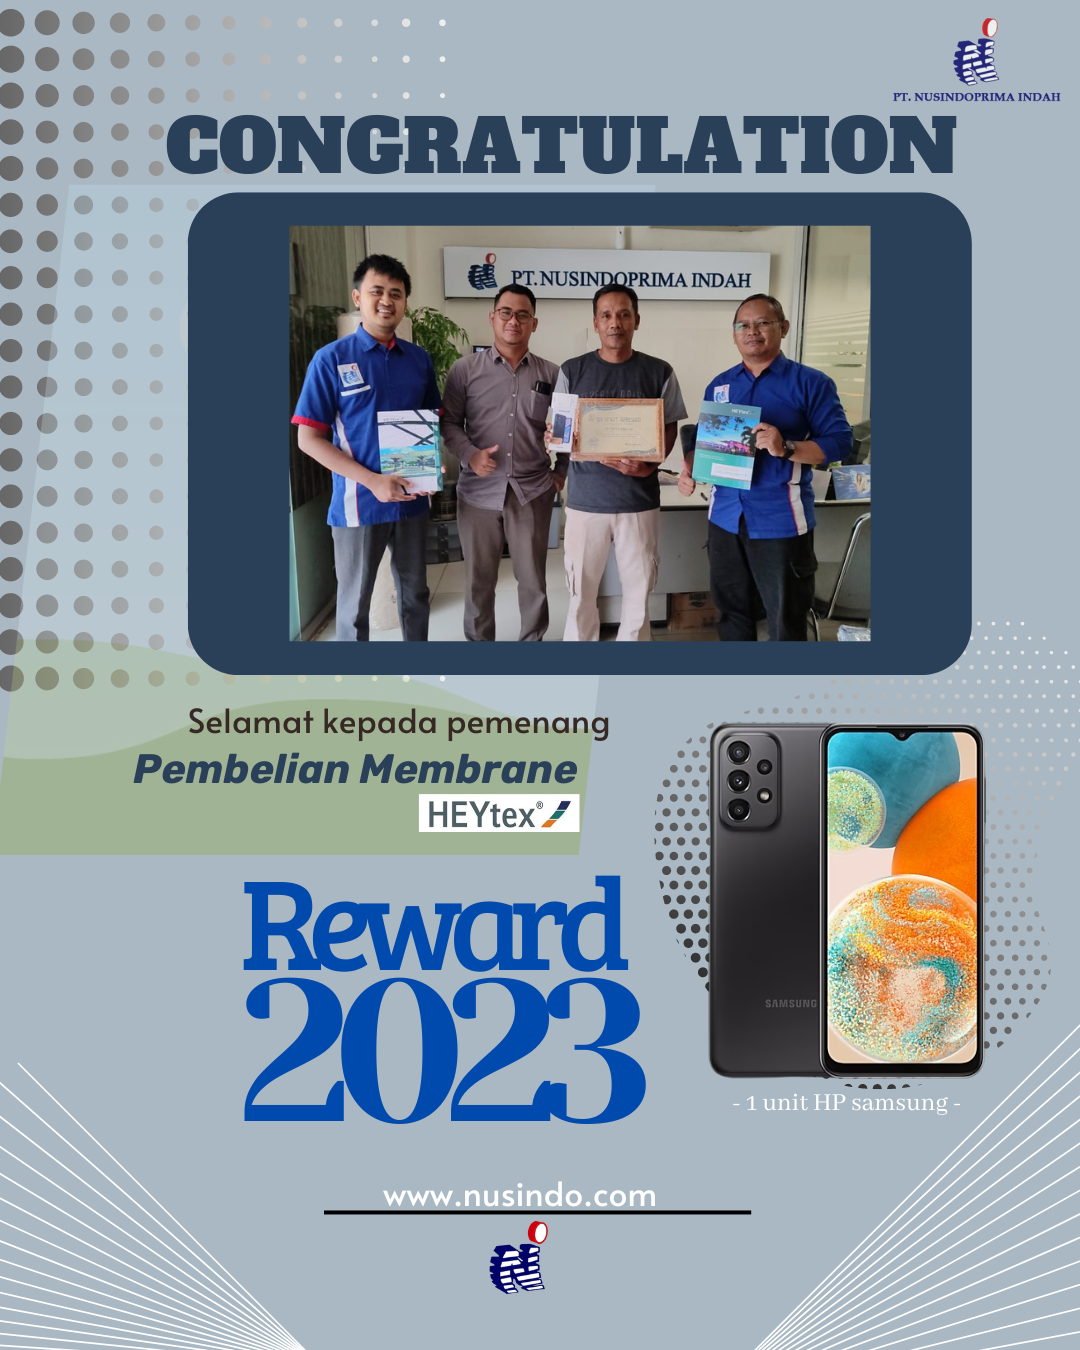 Pemenang Reward Pareto 2023